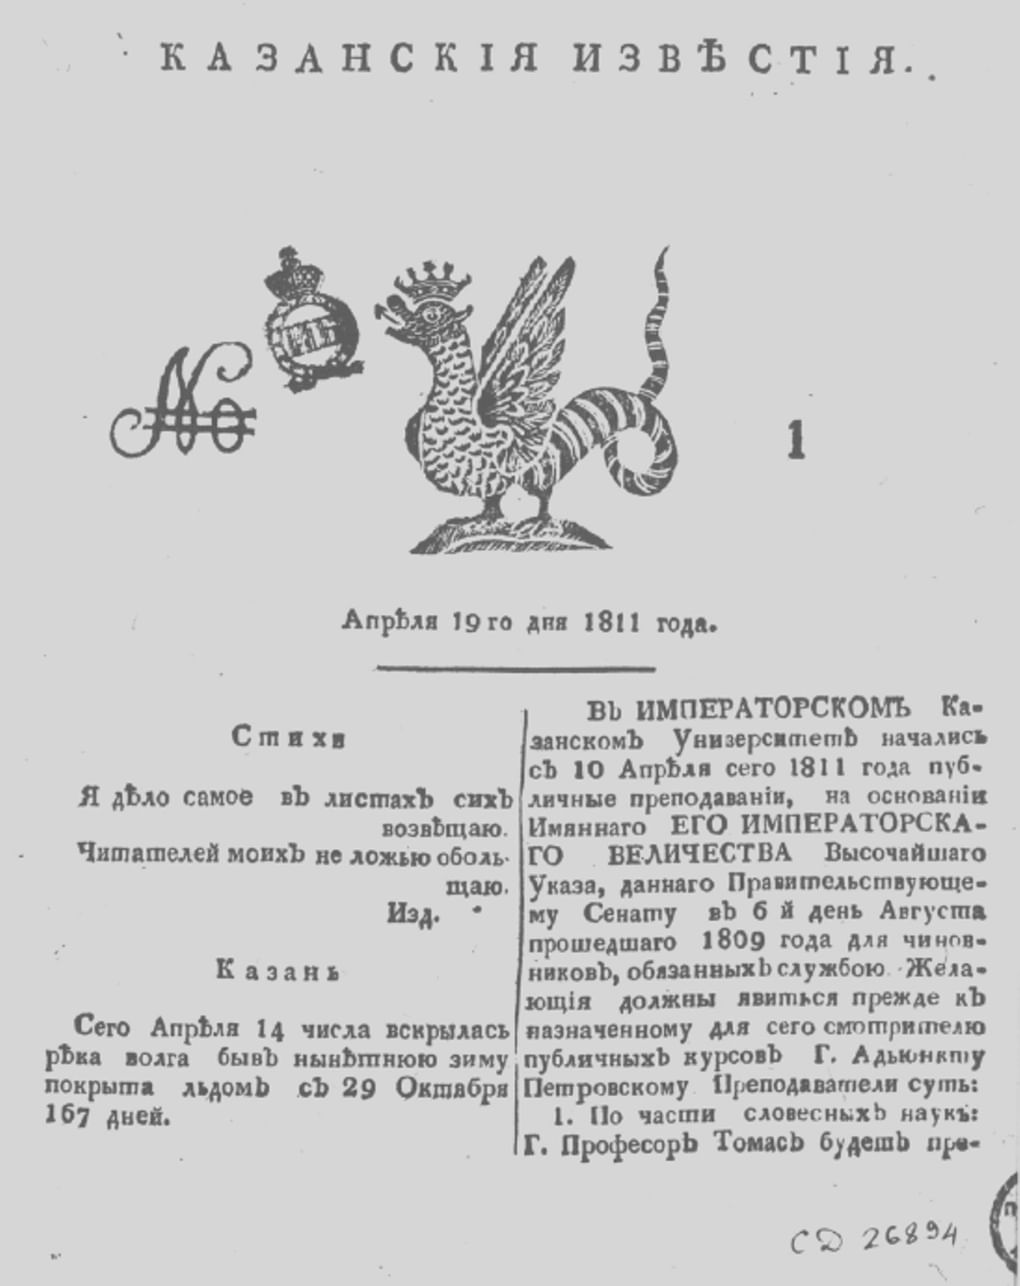 Первая полоса газеты «Казанские известия». 1811 год. Фотография: expositions.nlr.ru